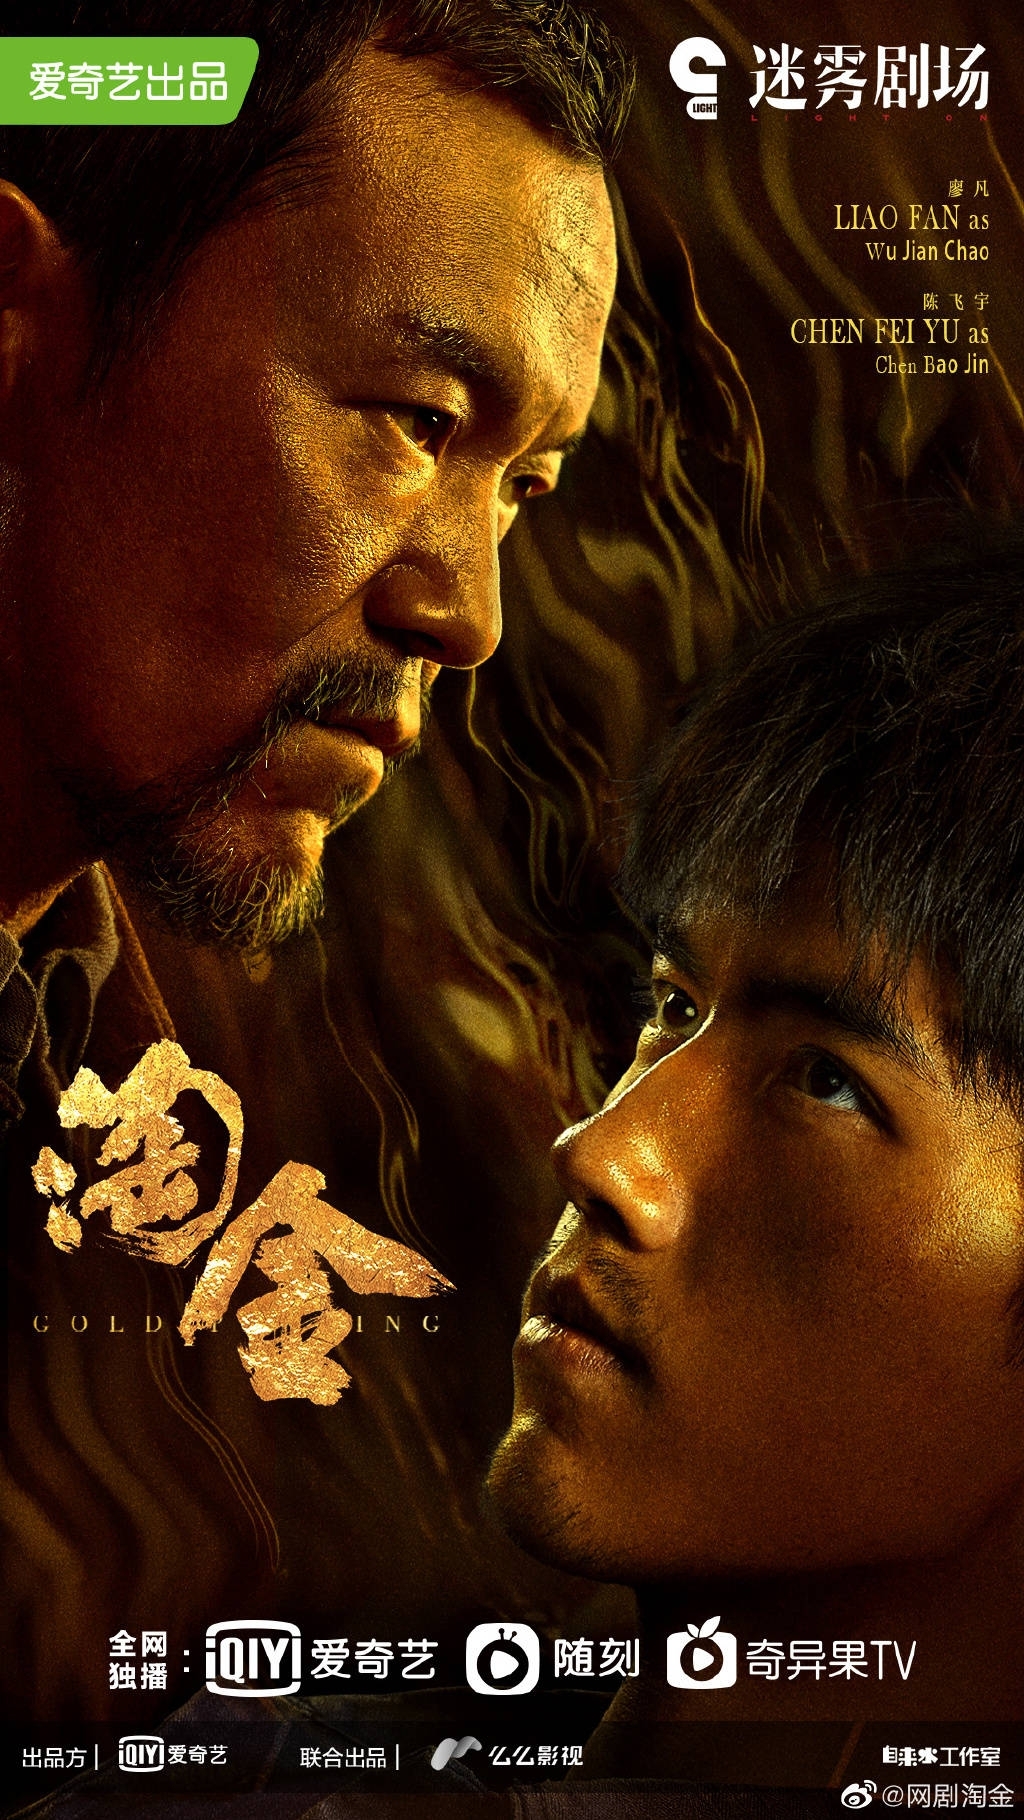 Top 10 bộ phim Hoa ngữ hot nhất đầu năm 2022 mà bạn không thể bỏ lỡ: 'Đời này có em', 'Khai Đoan', 'Kính Song Thành'...